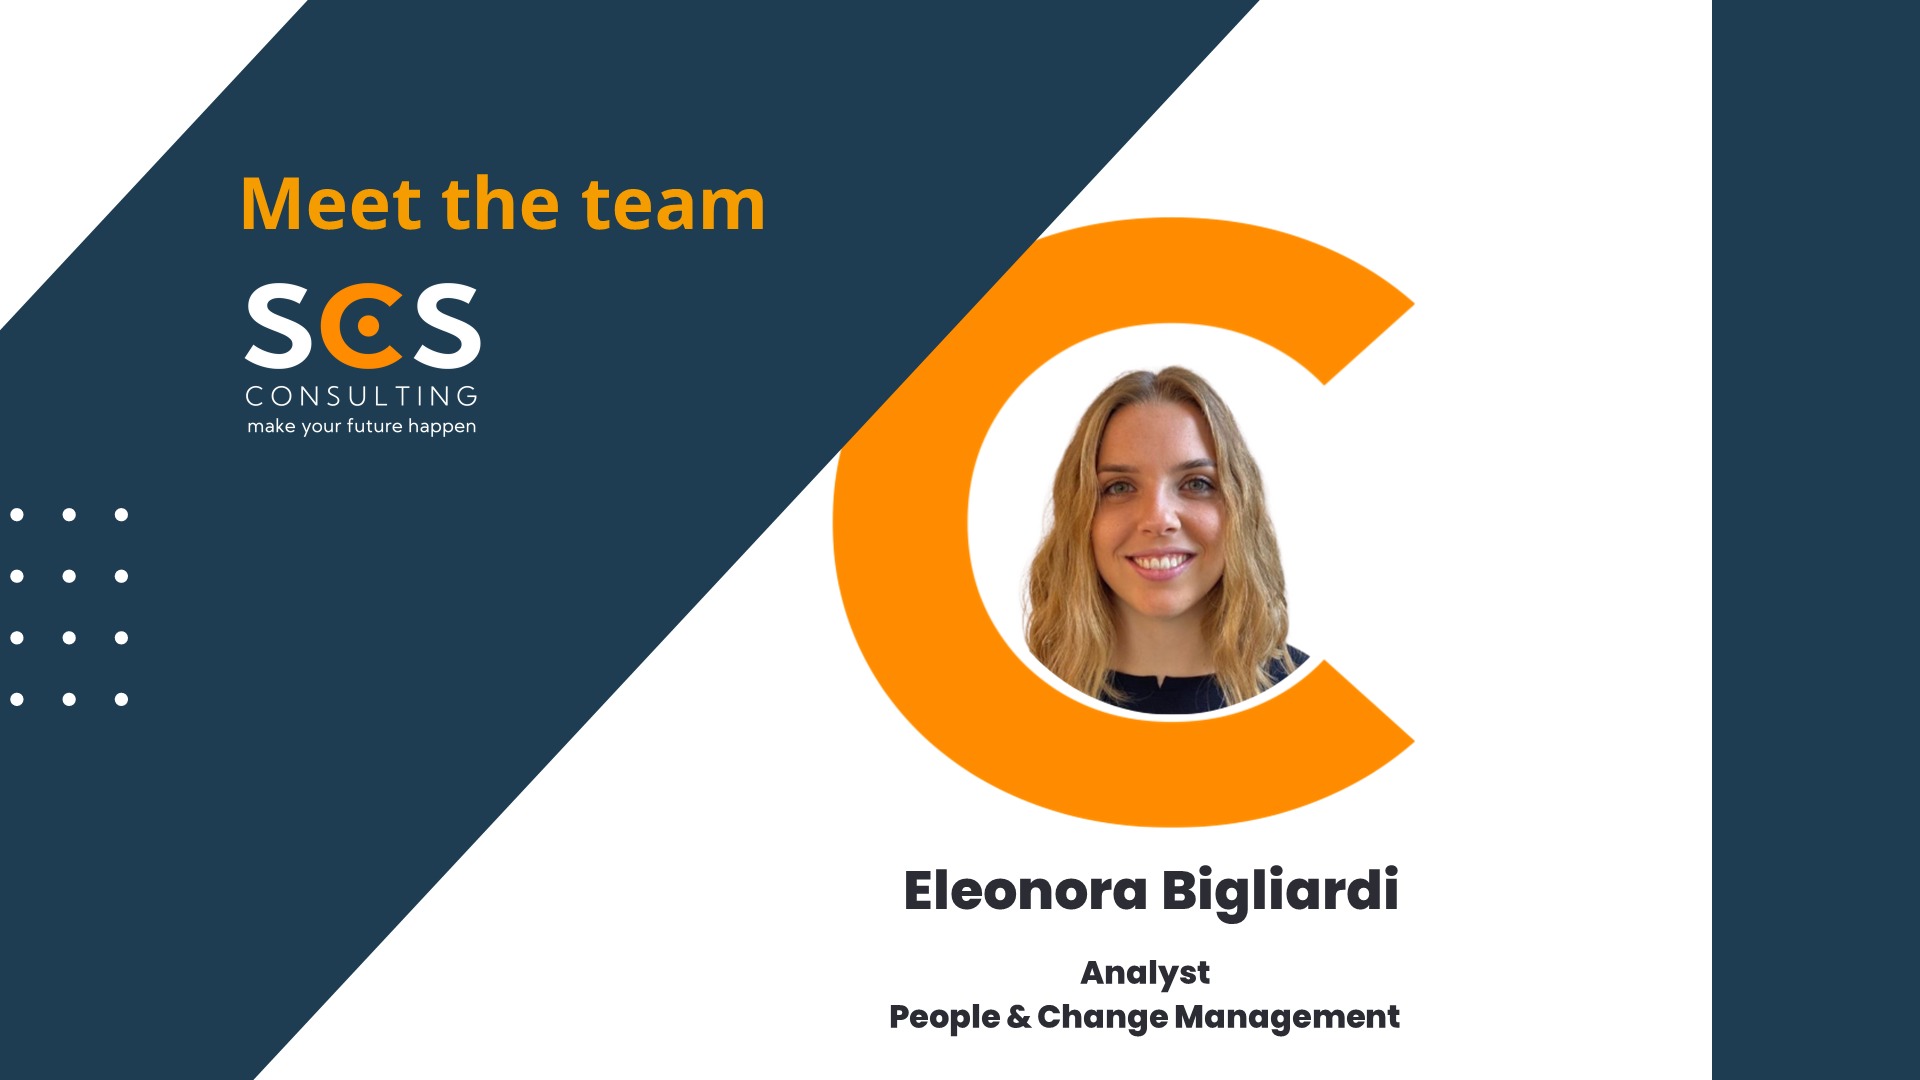 Meet the Team - Eleonora Bigliardi